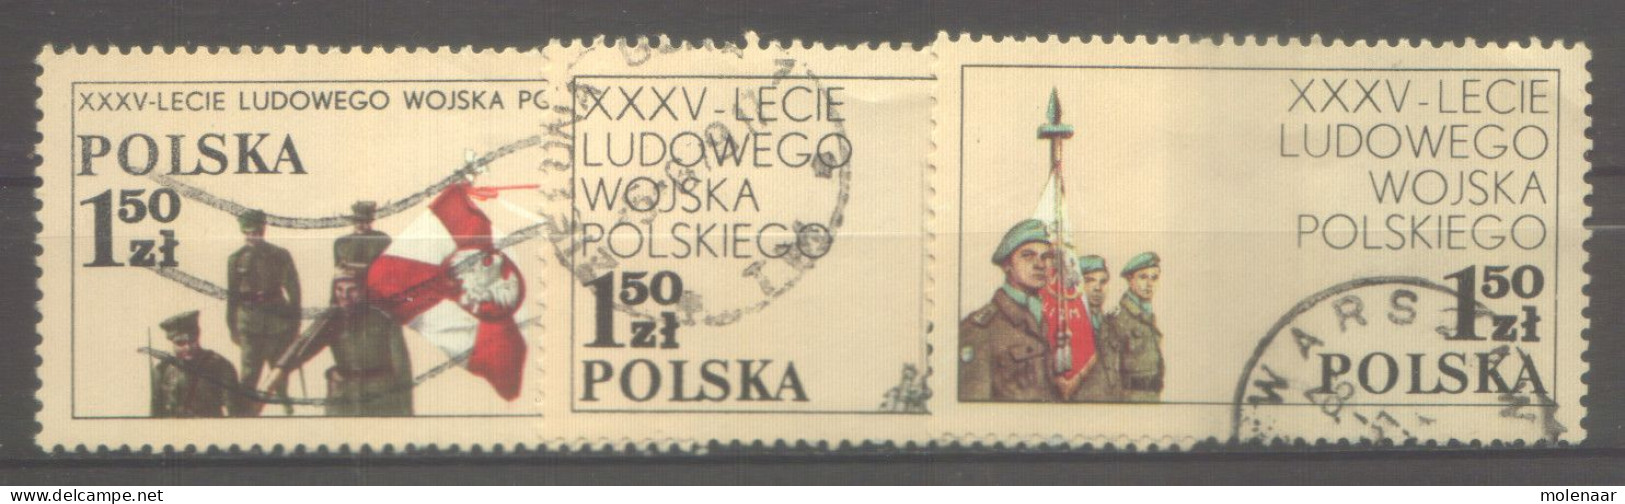 Postzegels > Europa > Polen > 1944-.... Republiek > 1971-80 > Gebruikt No. 2579-2581  (12158) - Usados